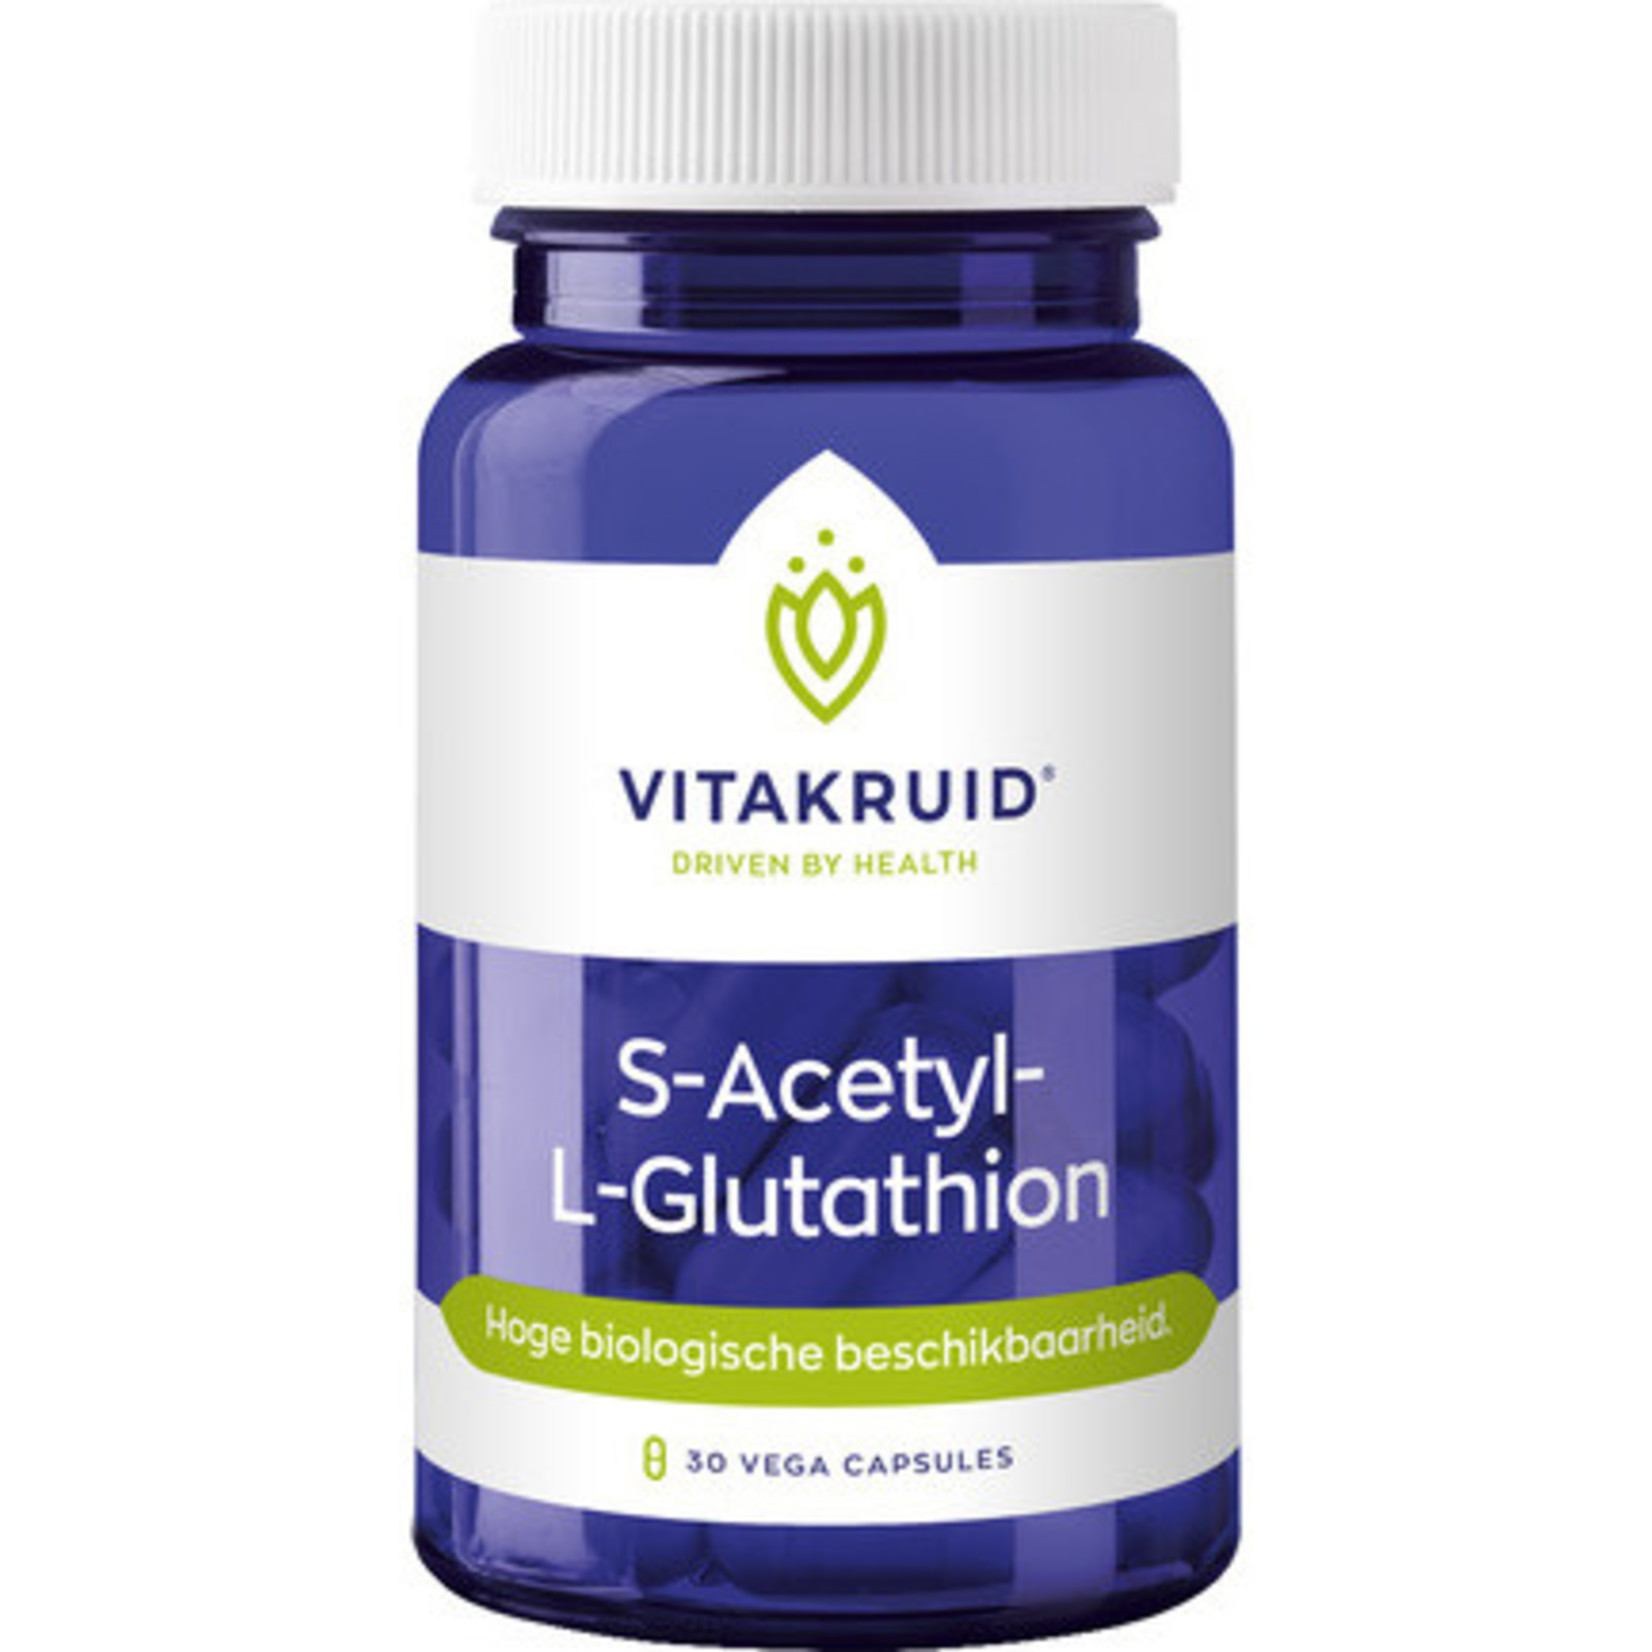 Vitakruid Vitakruid S-Acetyl-L-Glutathion Capsules